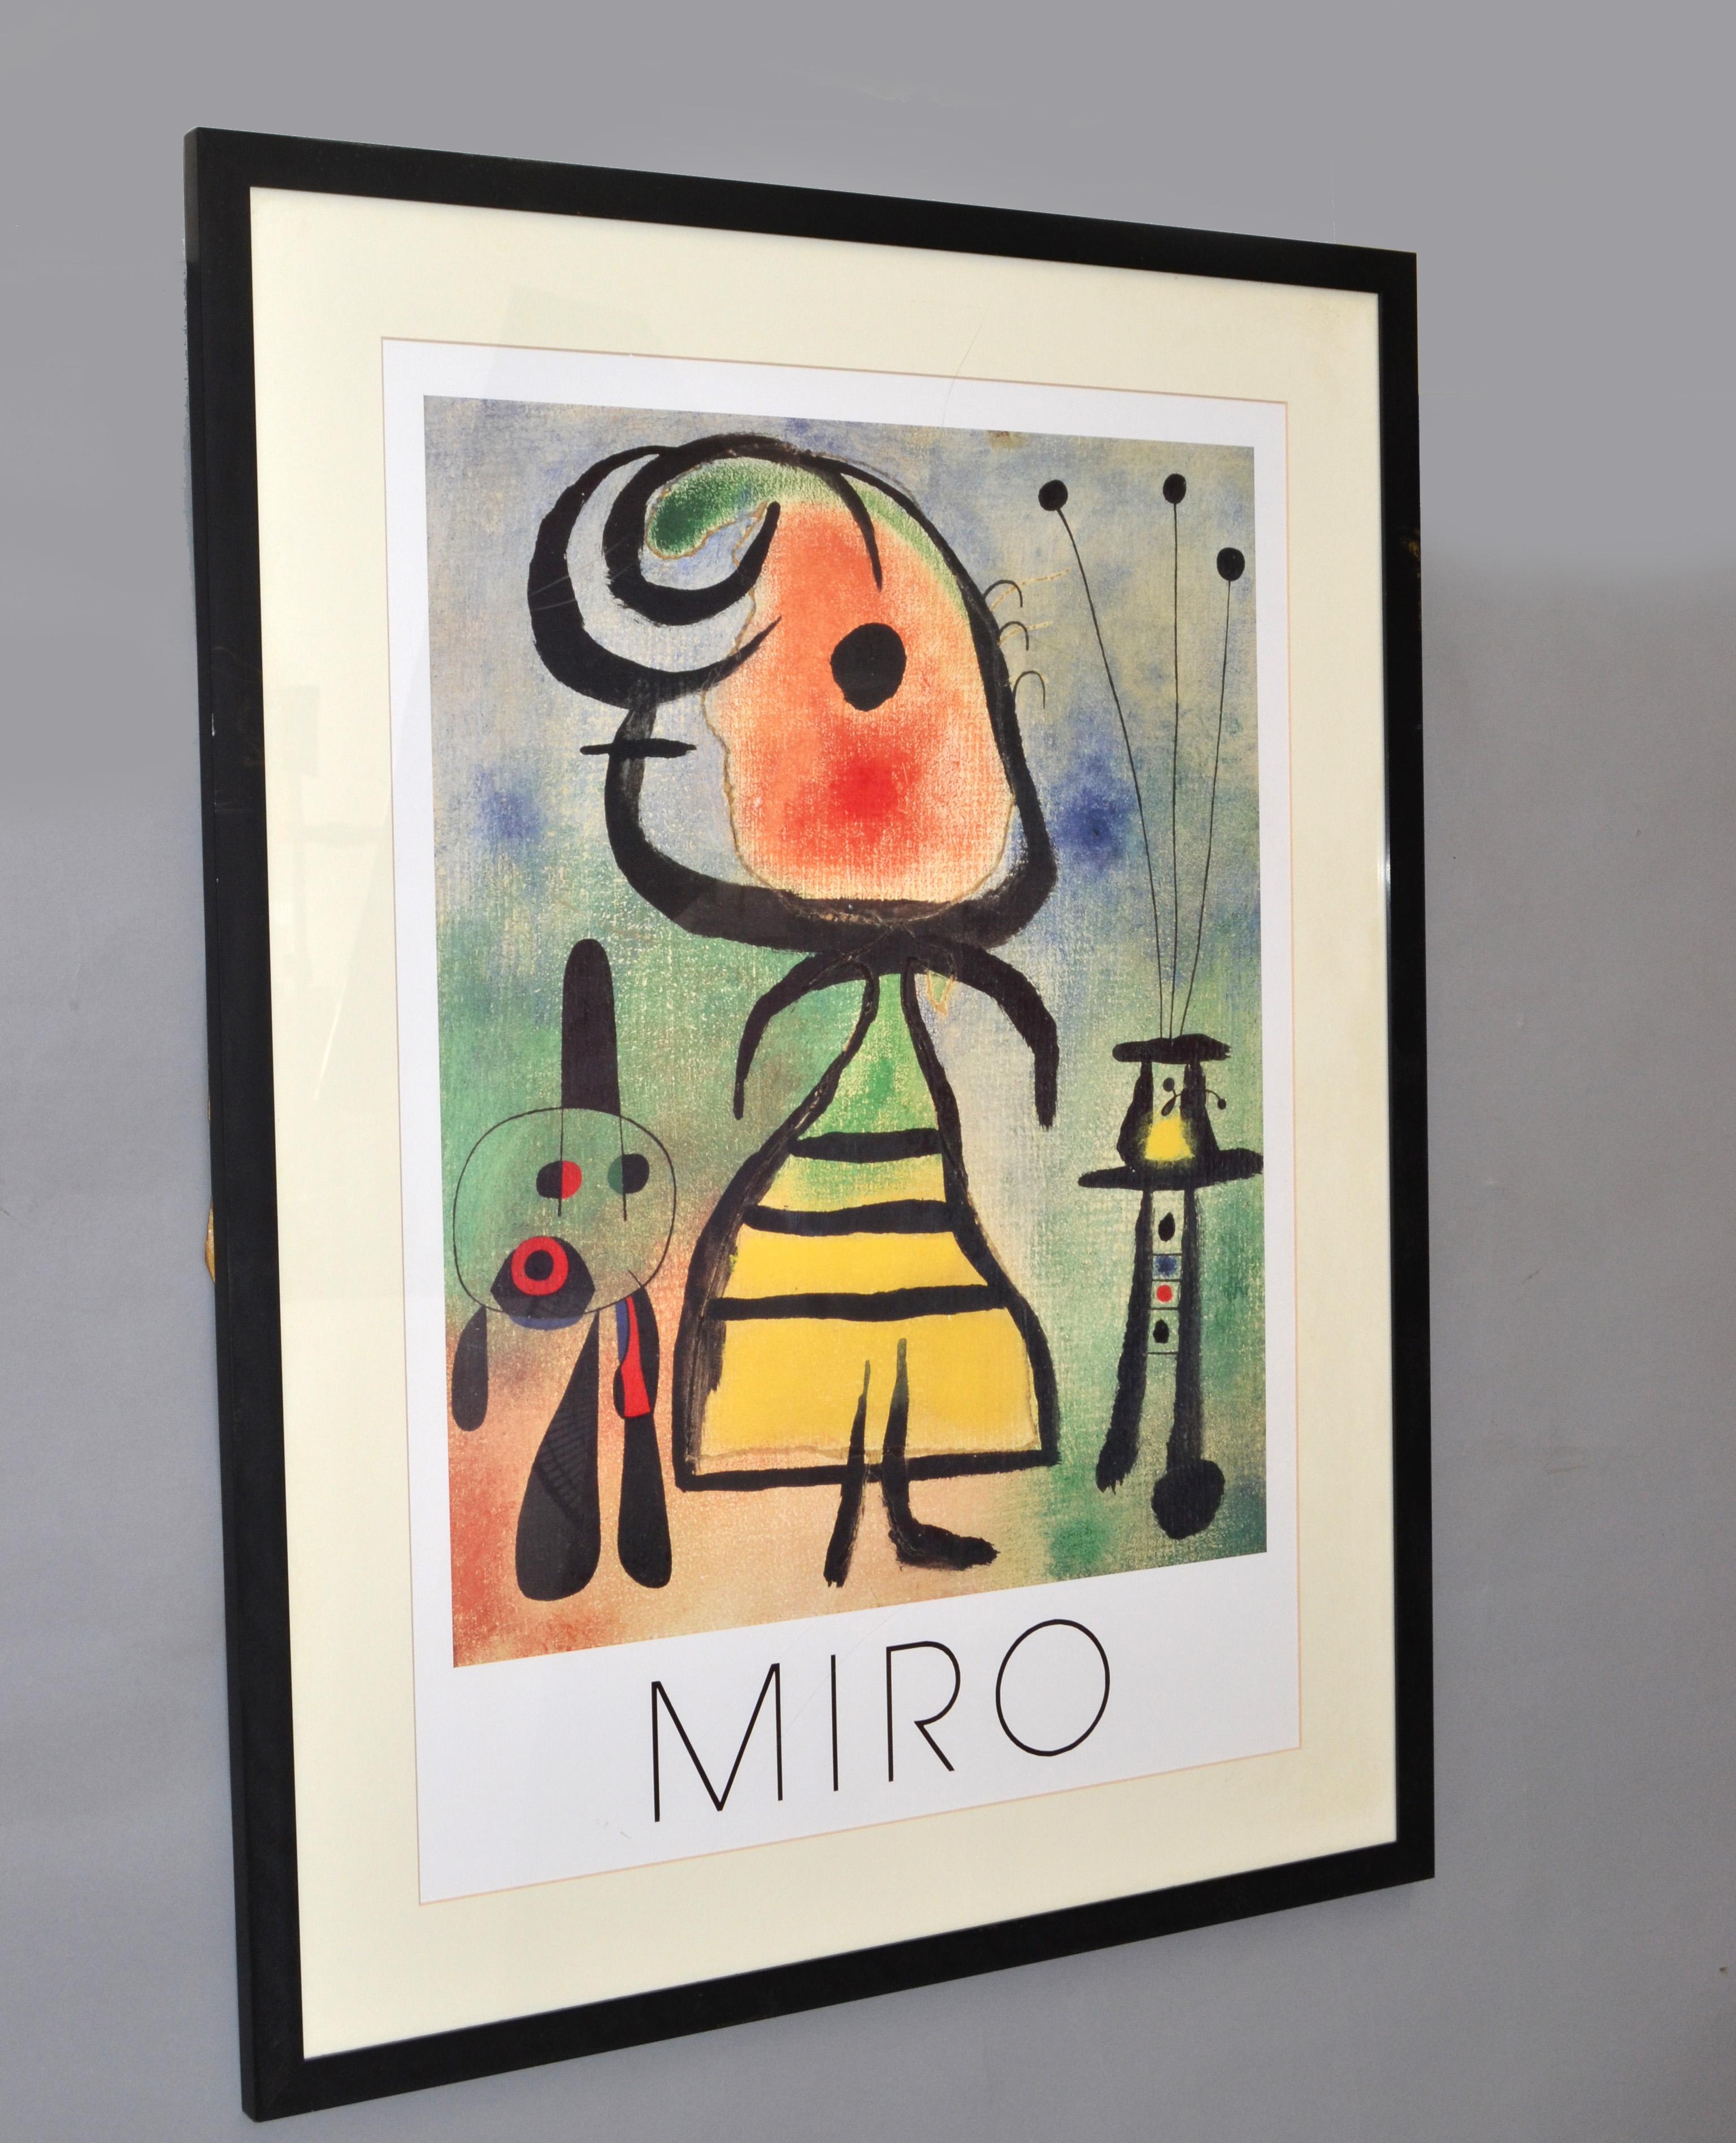 Um den perfekten Cartones Miro zu finden, muss man sich vielleicht durch die Werke aus verschiedenen Epochen klicken - hier eine Version aus dem späten 20.
Gerahmte Femme et Chat von Joan Miro Lithographie Gedruckt in England, 1989.
Die